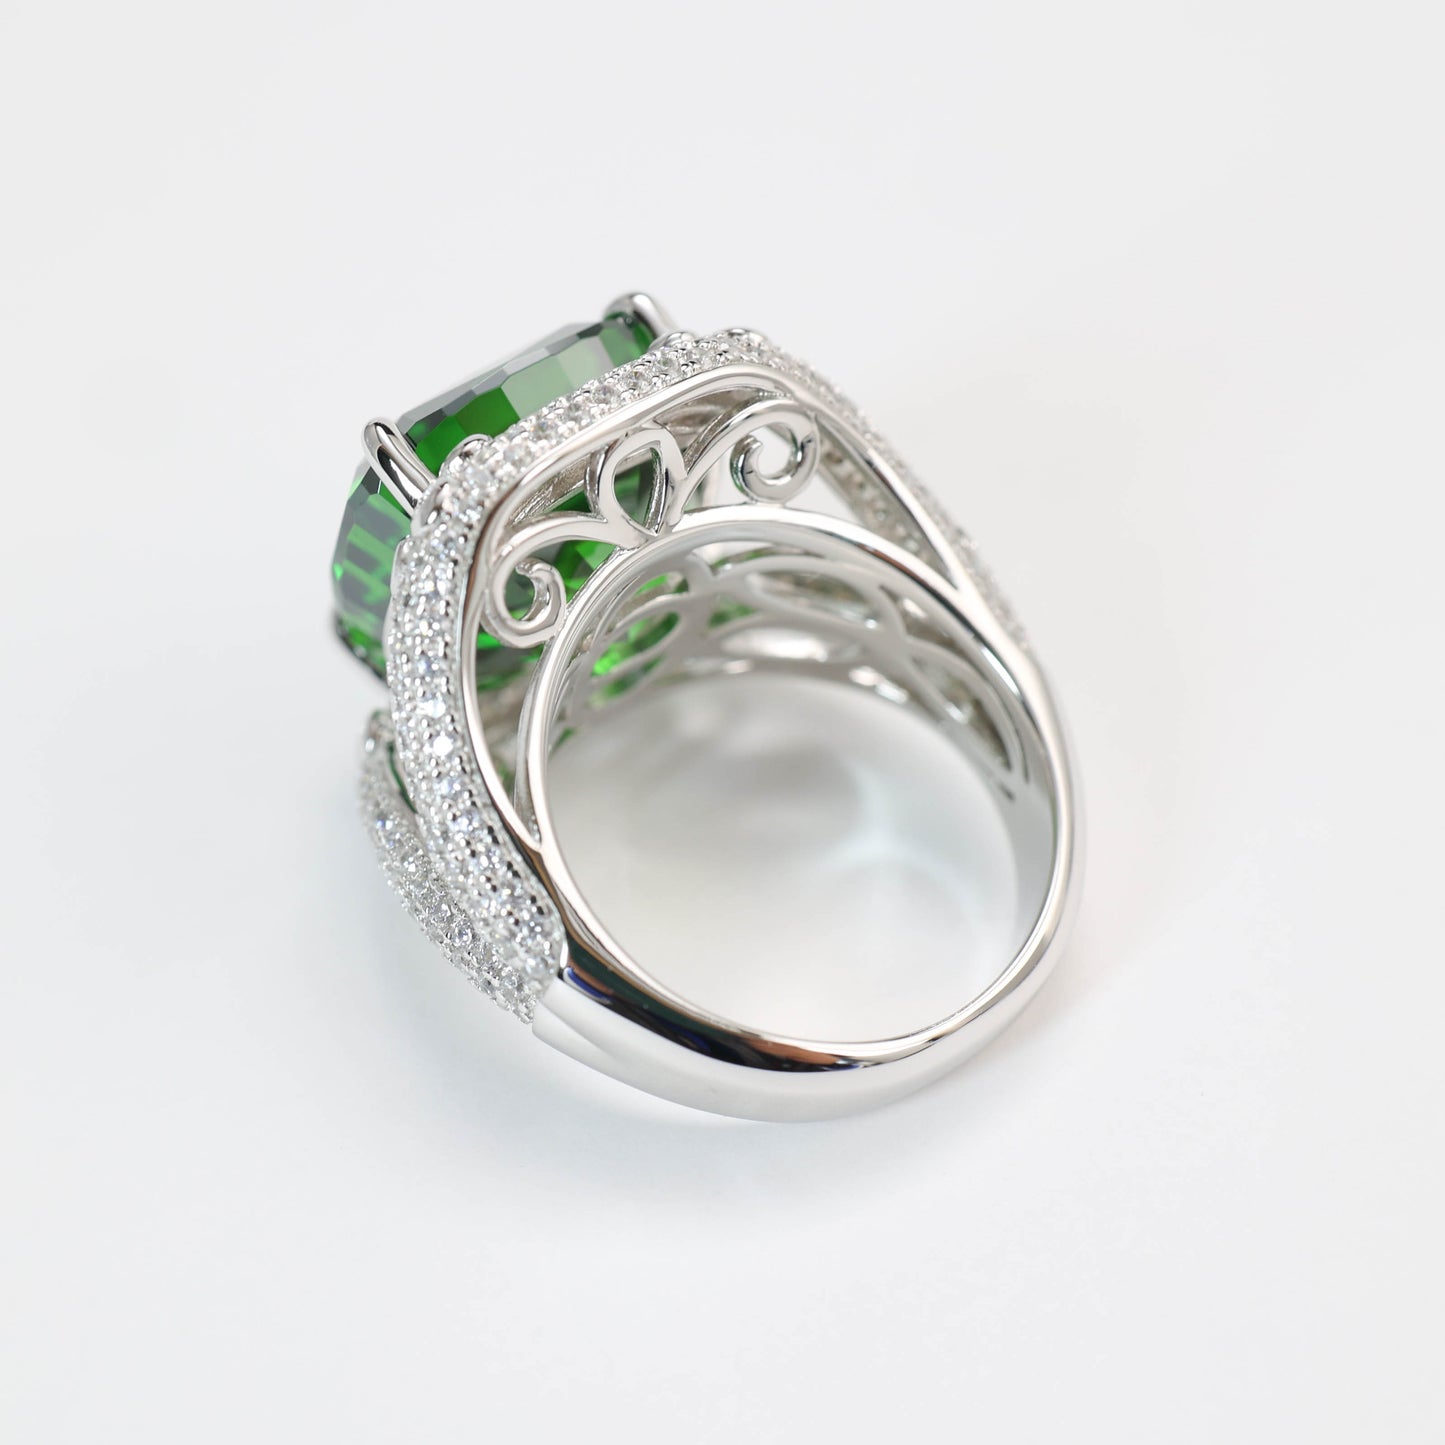 Tsavorit in Mikrofassung, olivgrüne Farbe, im Labor hergestellte Steine, detaillierter Ring mit 4 Krappen, Sterlingsilber. (18 Karat)